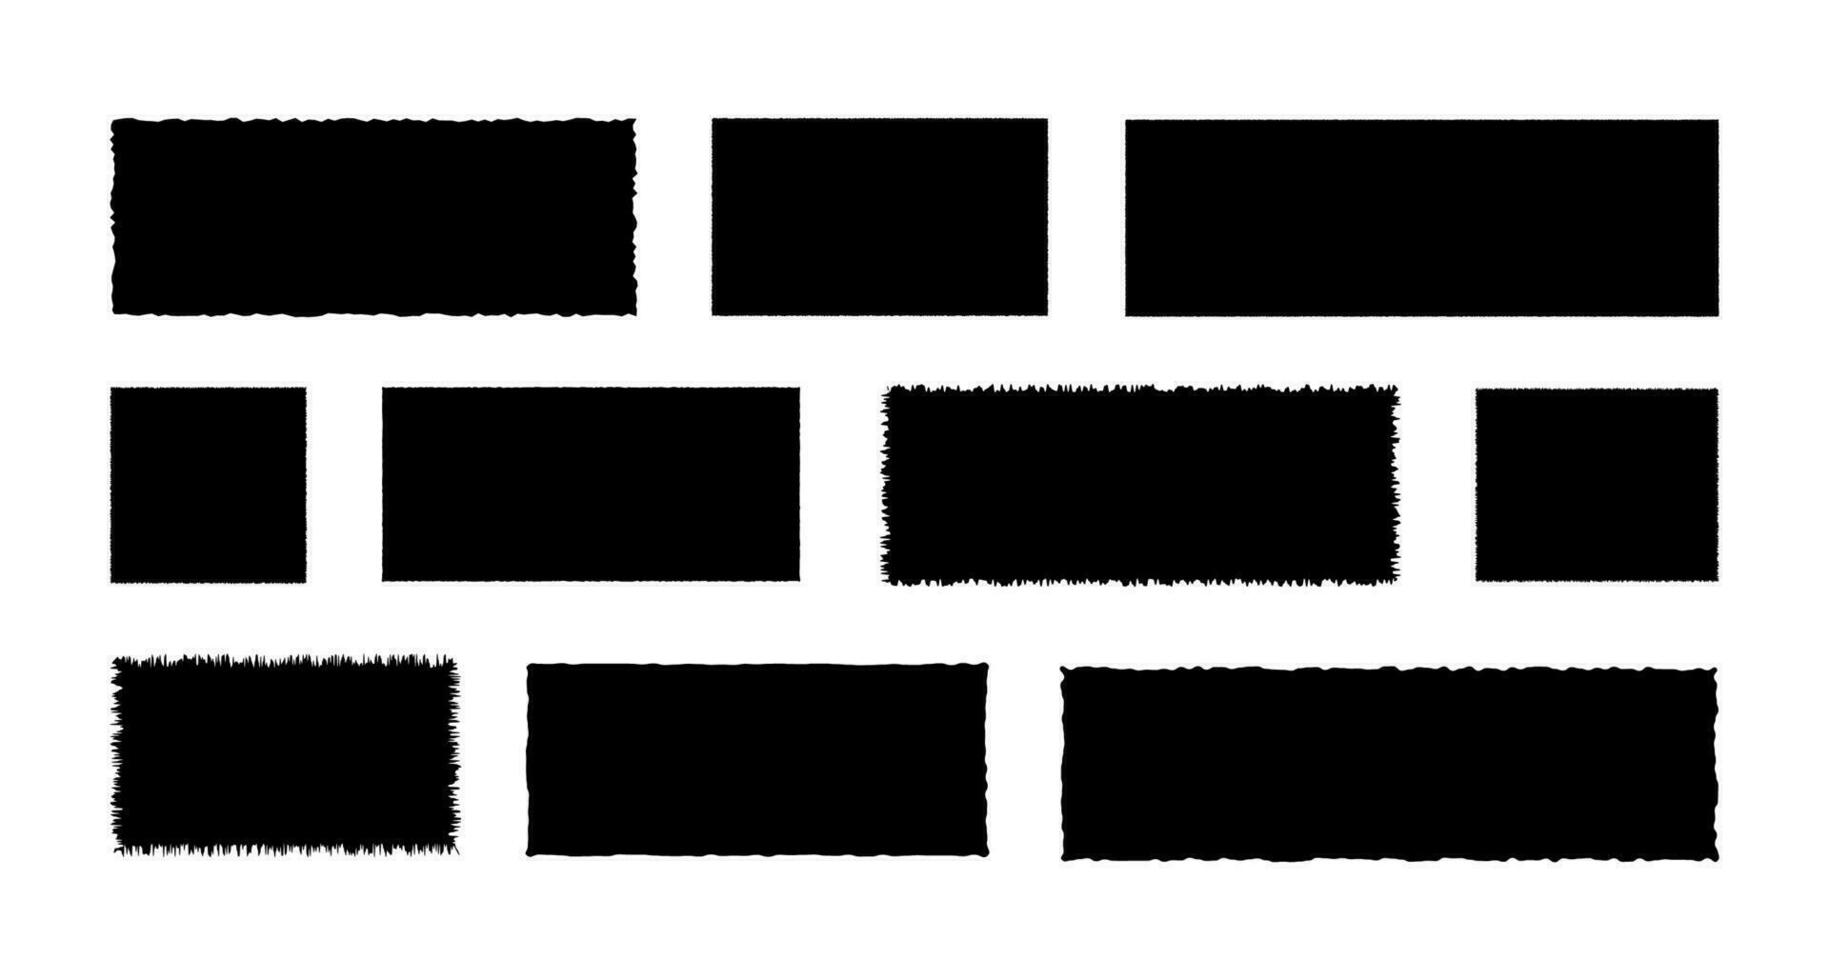 gekarteld vormen, gescheurd papier set. gescheurd rechthoek kaders met gekarteld randen, getextureerde grunge elementen. zwart silhouetten, vector illustratie geïsoleerd in achtergrond.